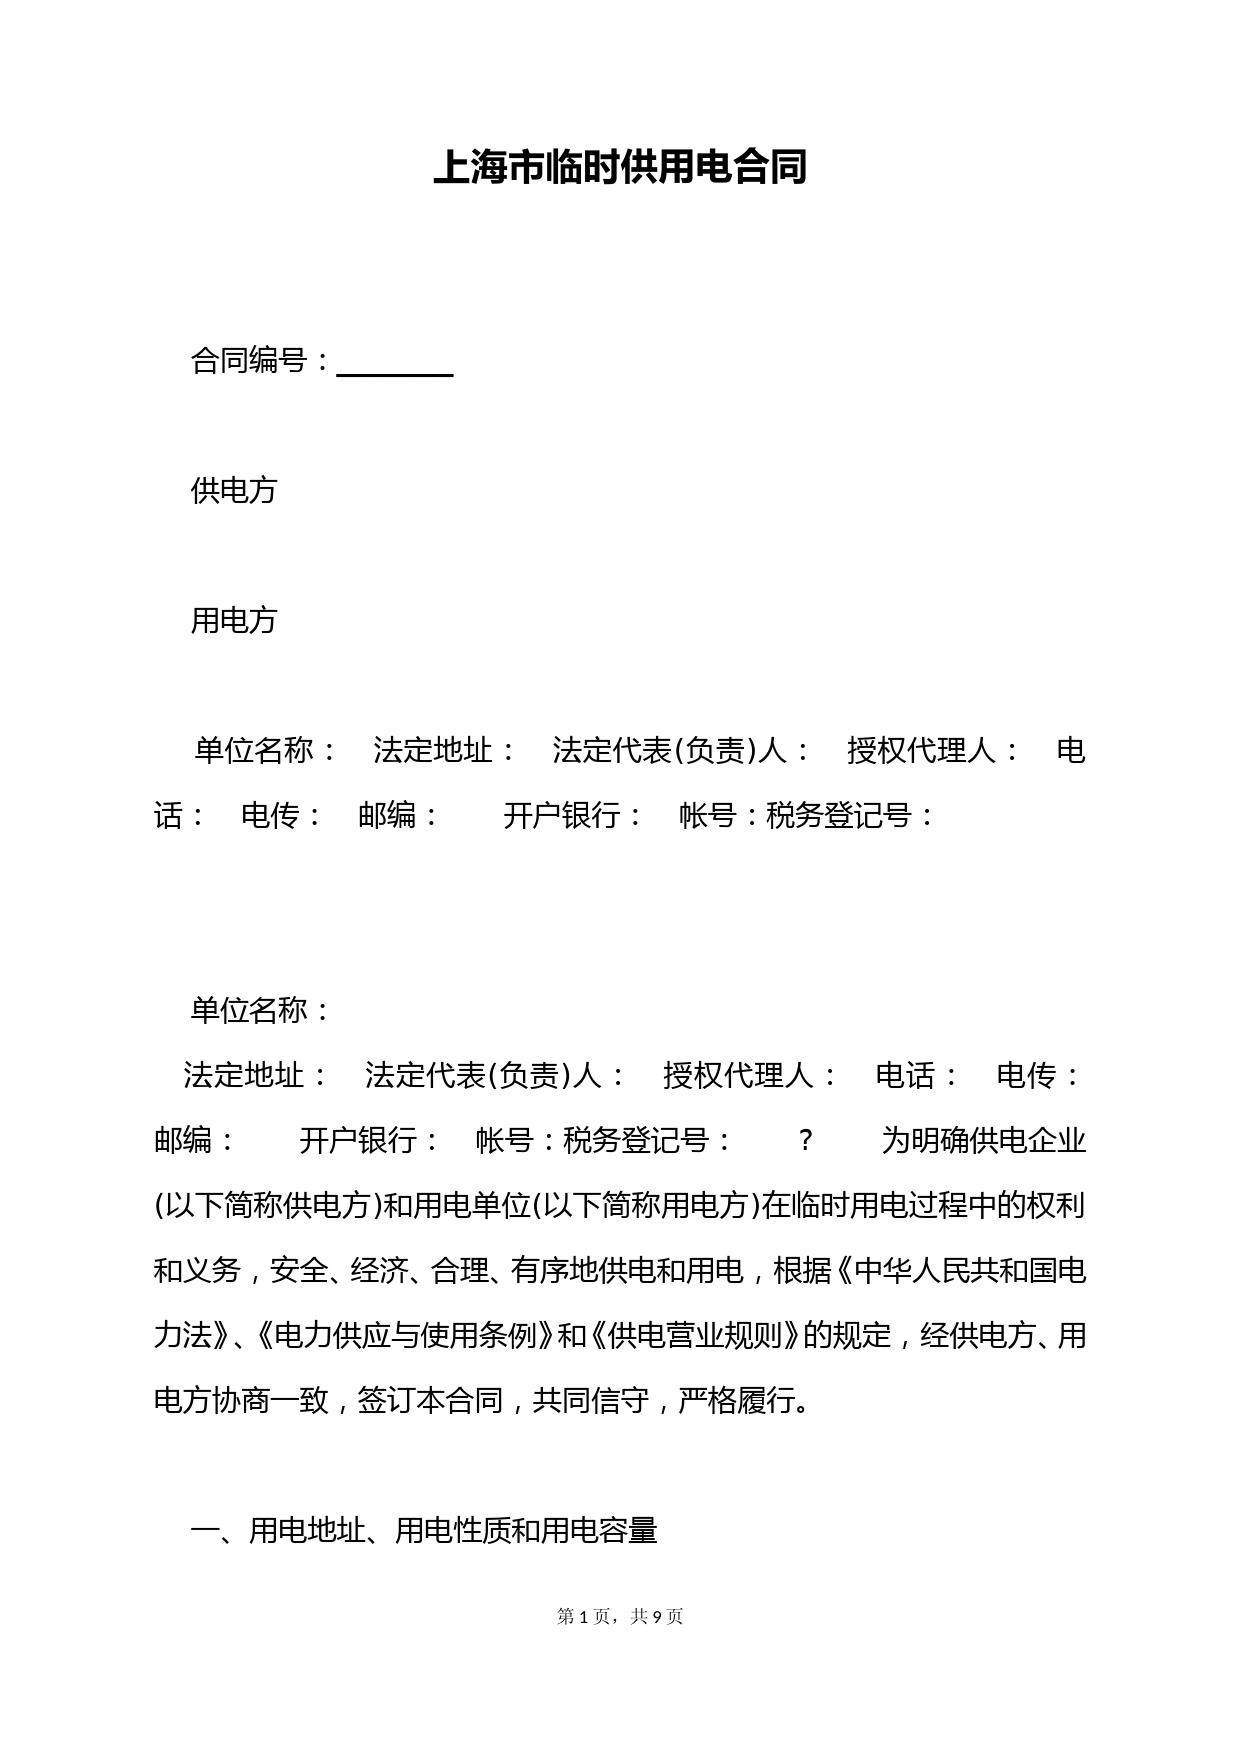 上海市临时供用电合同(标准版)